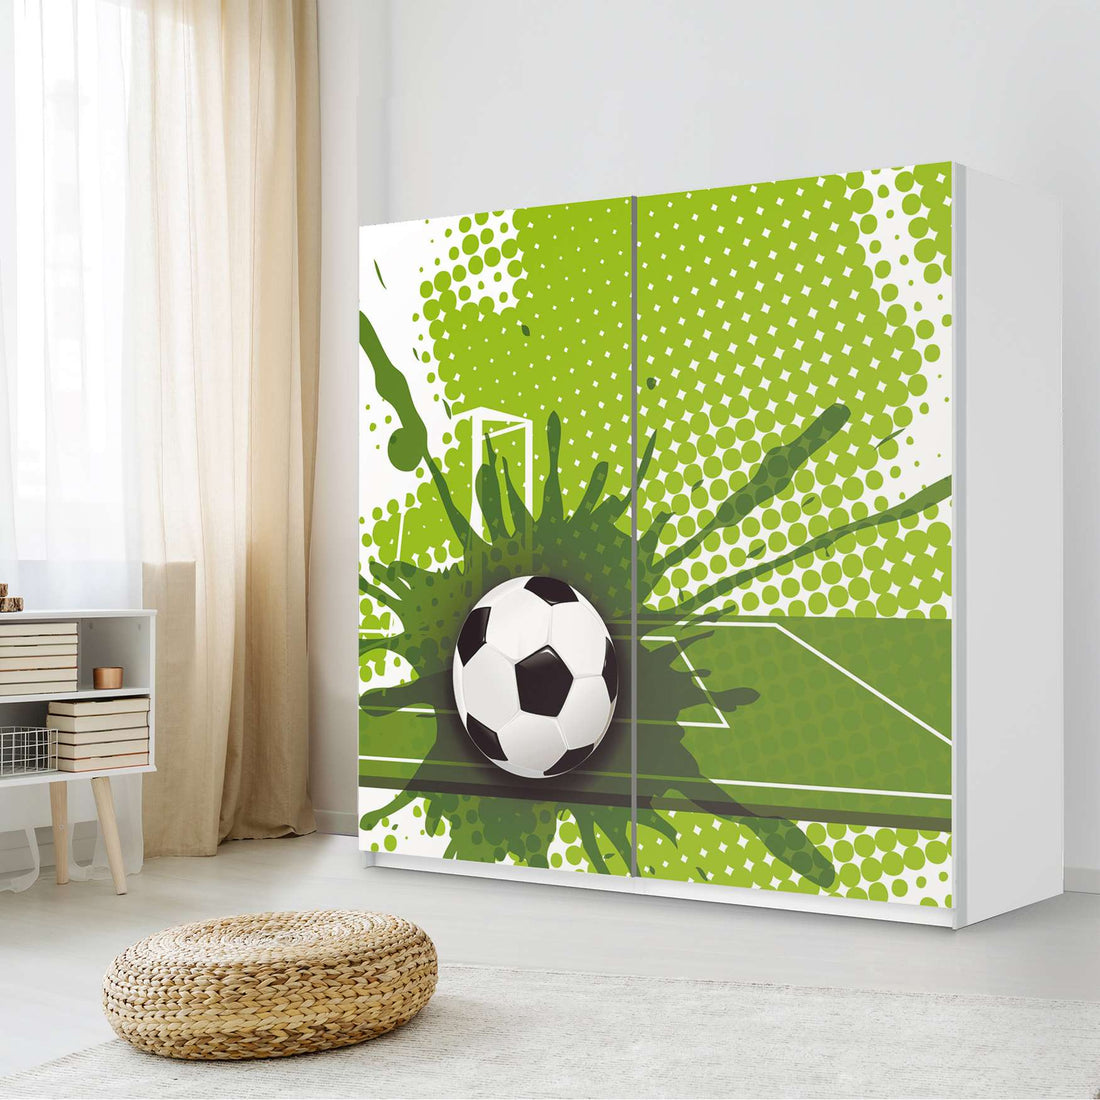 Möbel Klebefolie Goal - IKEA Pax Schrank 201 cm Höhe - Schiebetür - Kinderzimmer